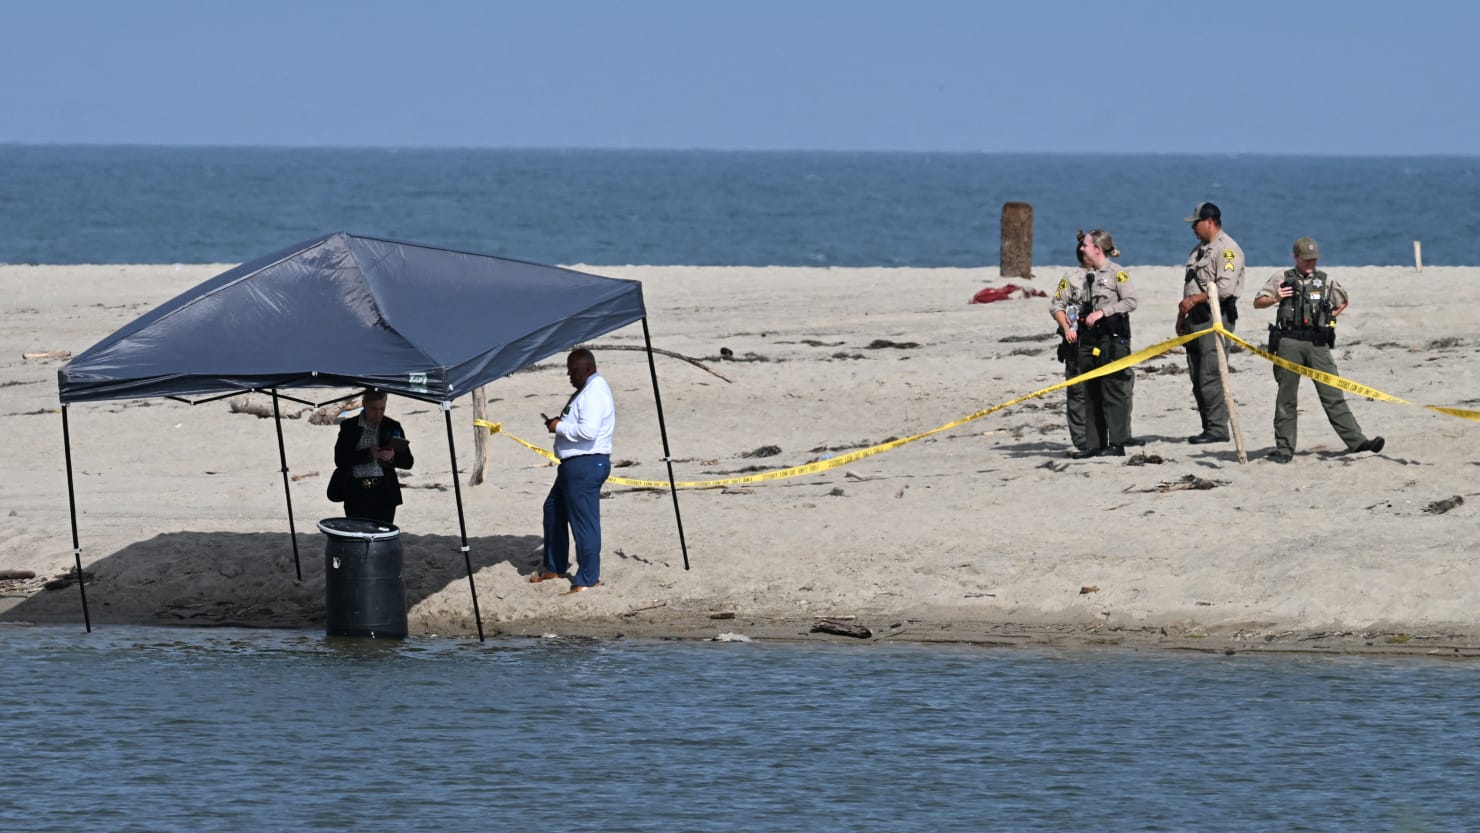 Naked Body Found Stuffed Inside Barrel by Malibu Lifeguard Identified pic